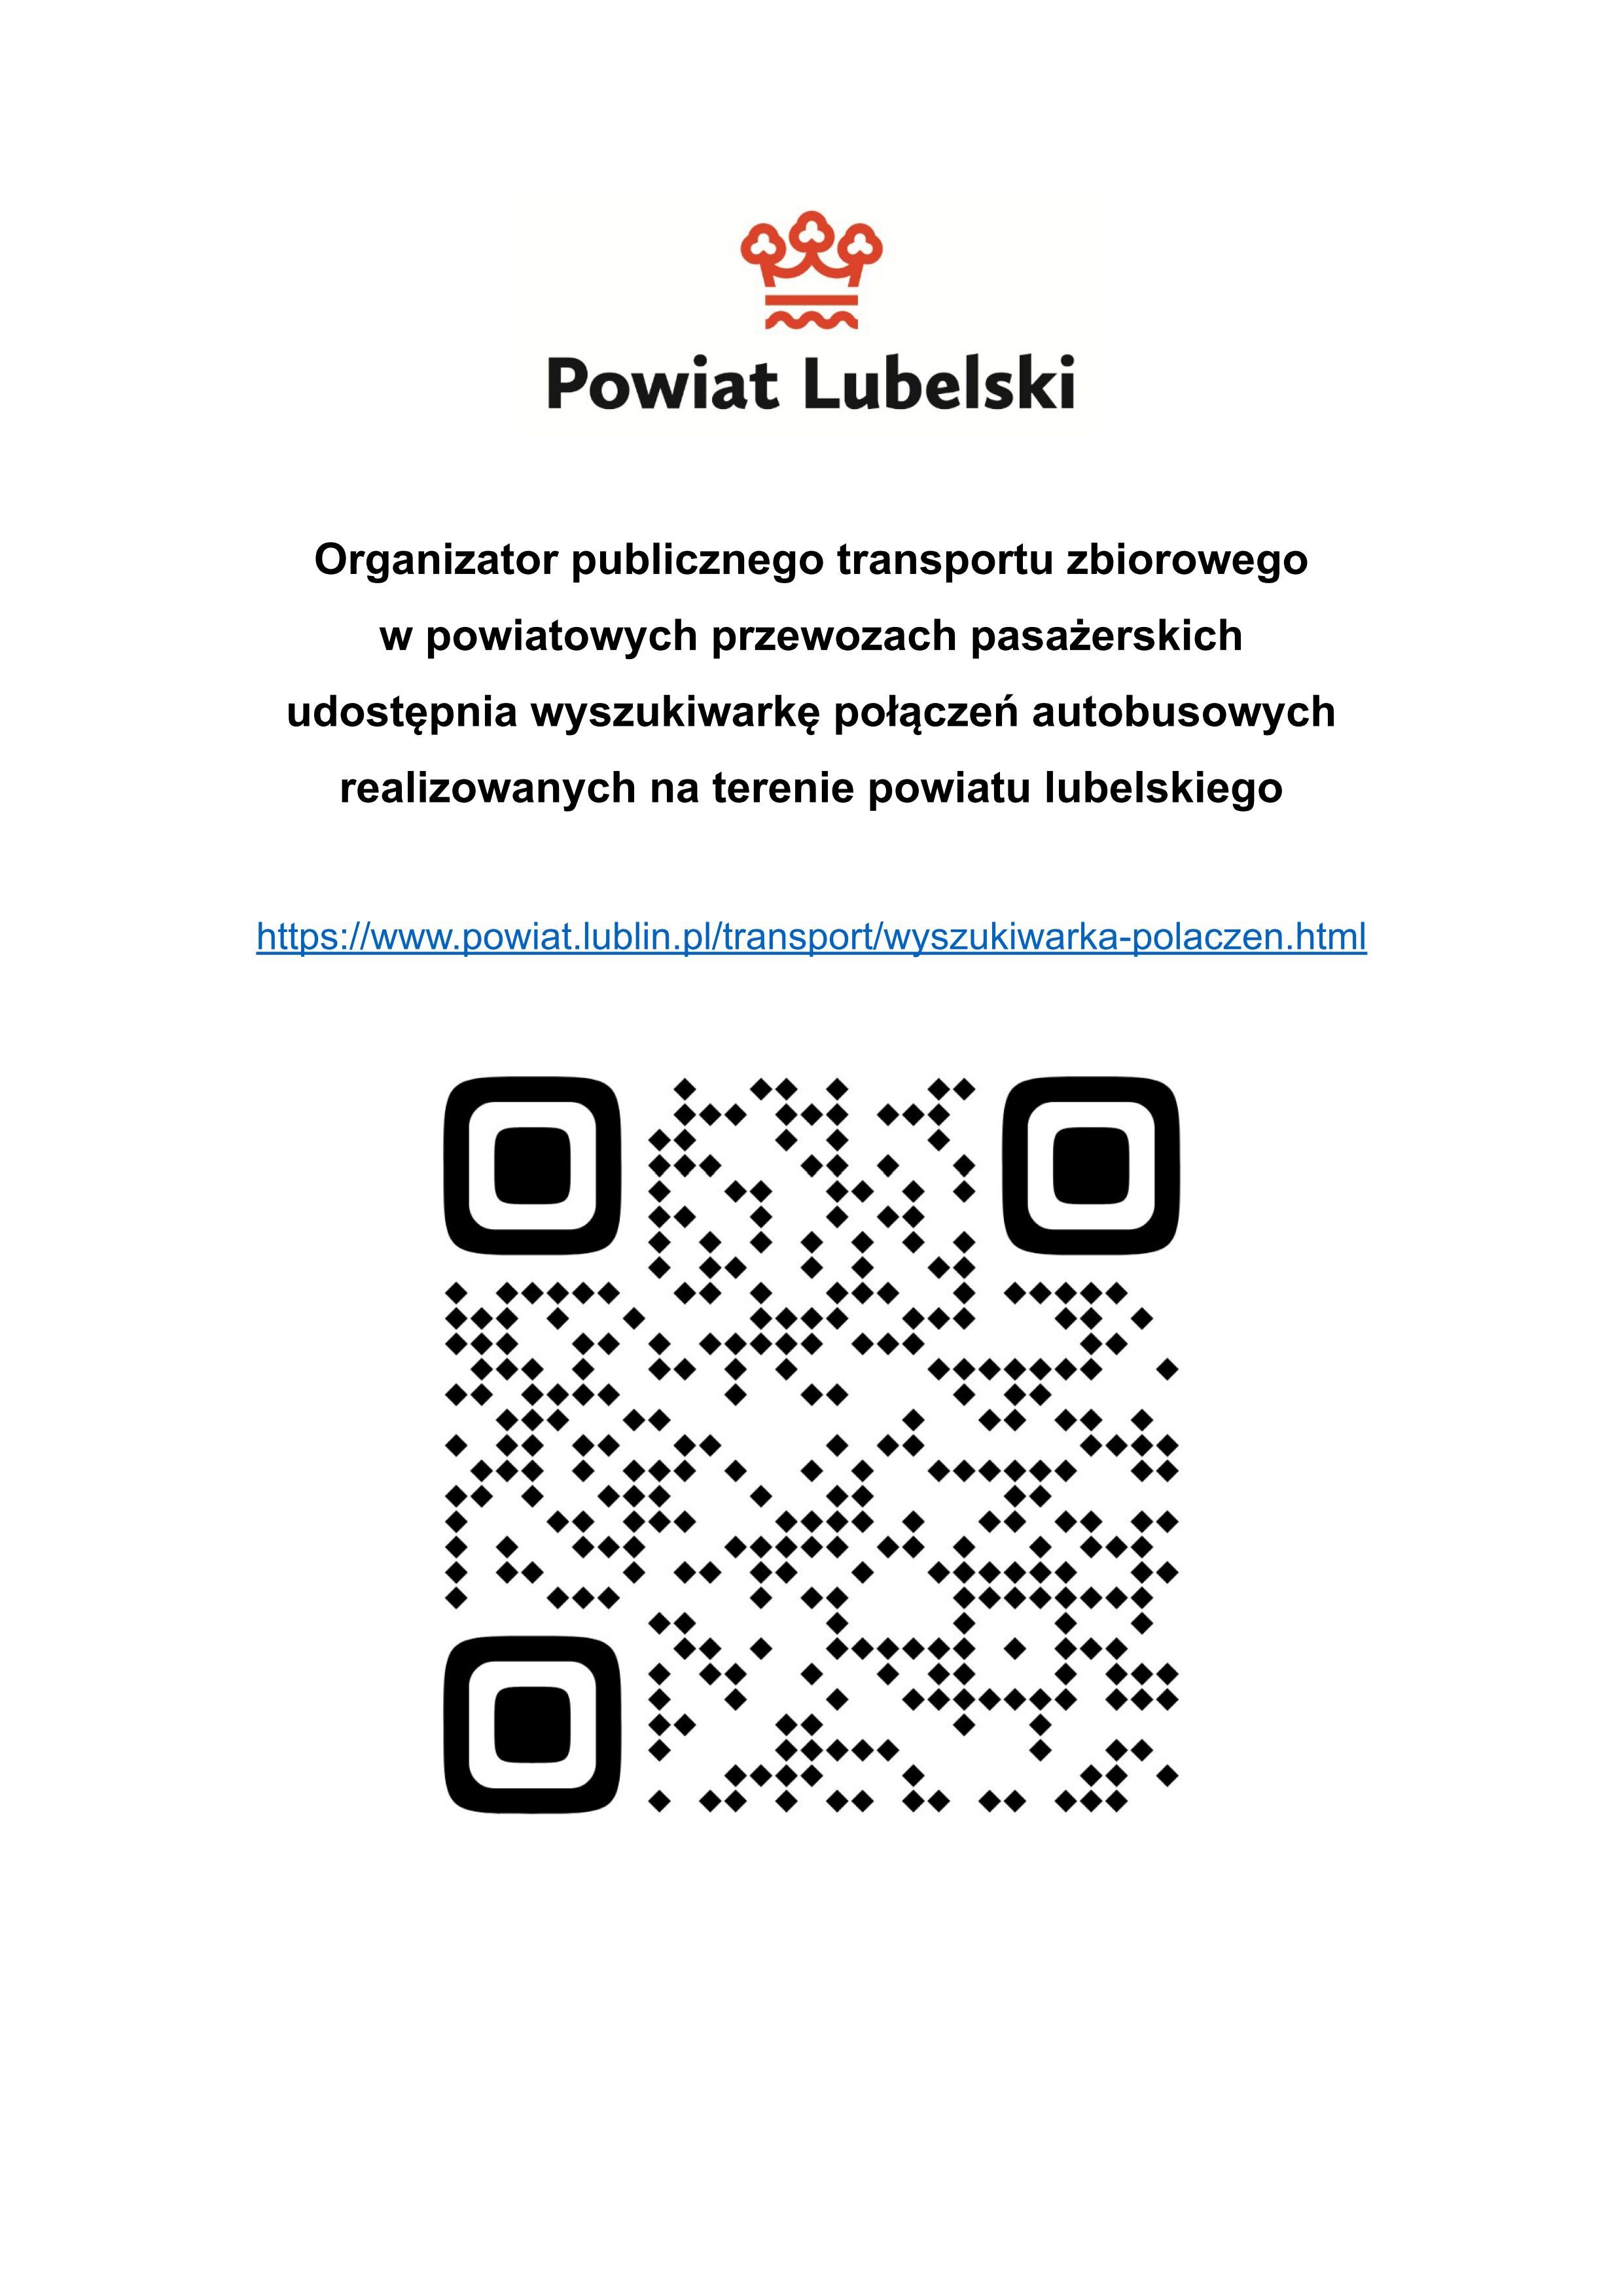 Logo Powiatu Lubelskiego. Link do Wyszukiwarki połączeń autobusowych.